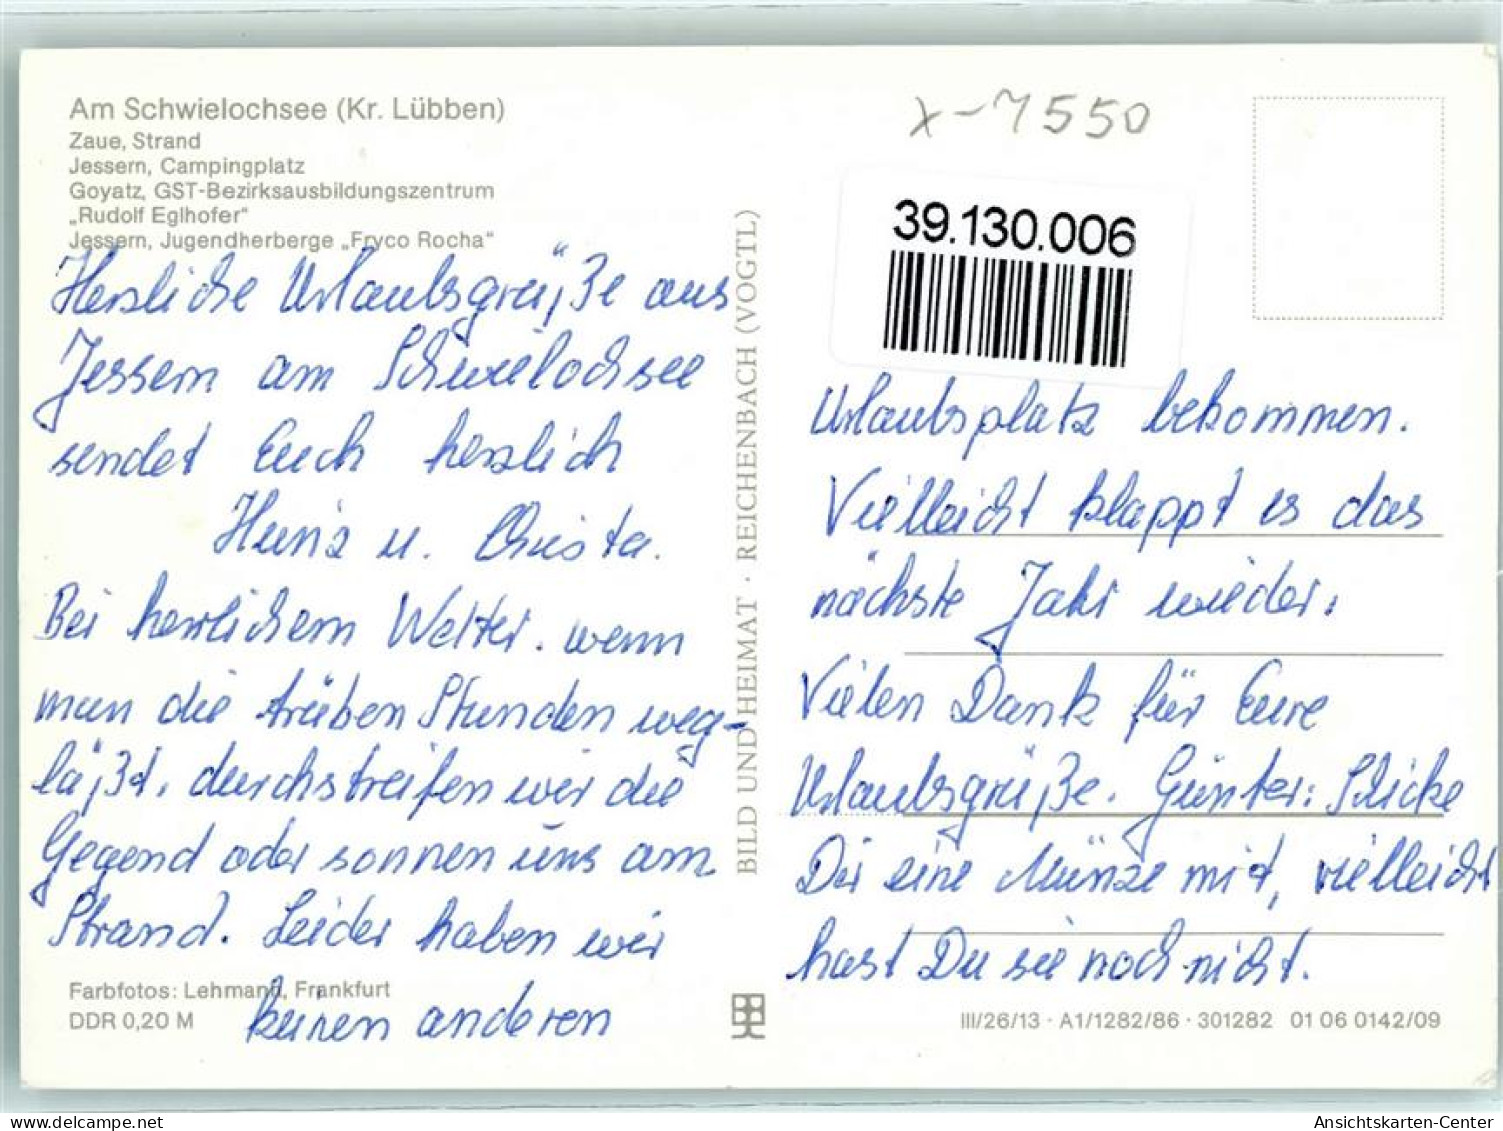 39130006 - Schwielochsee - Goyatz